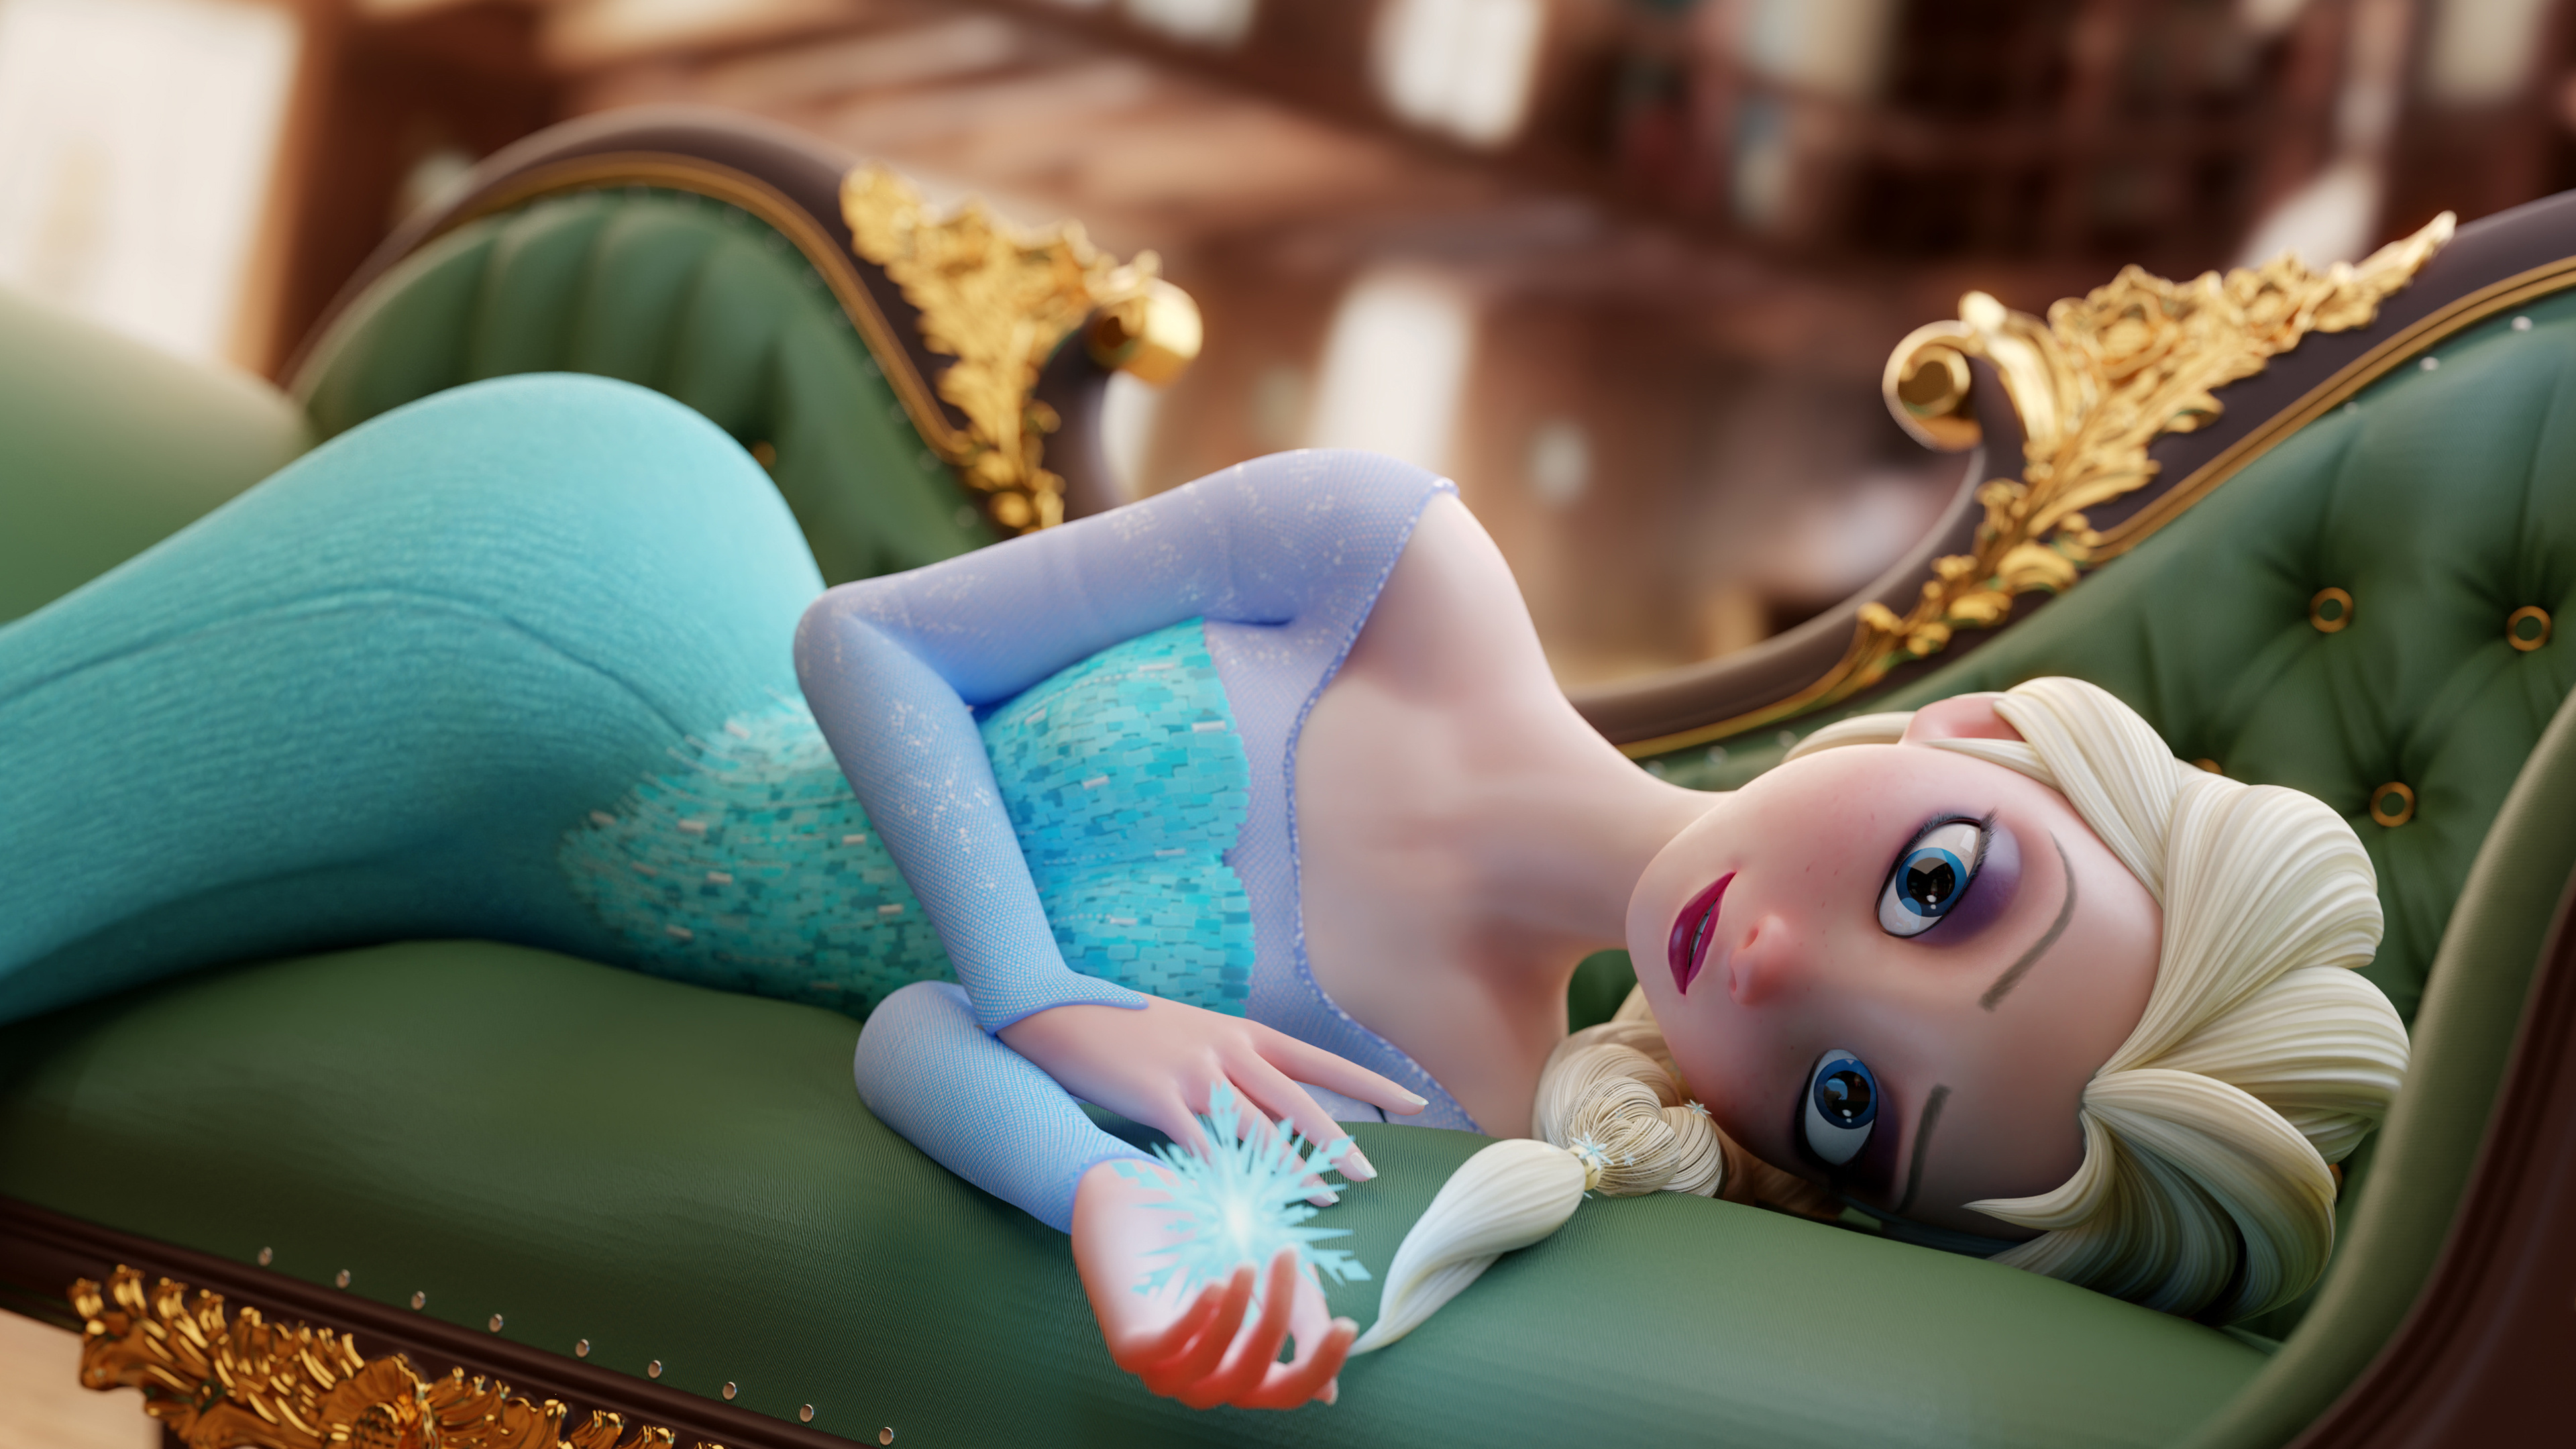 Elsa from Frozen, Ultra HD wallpaper, 3840x2160 4K Desktop